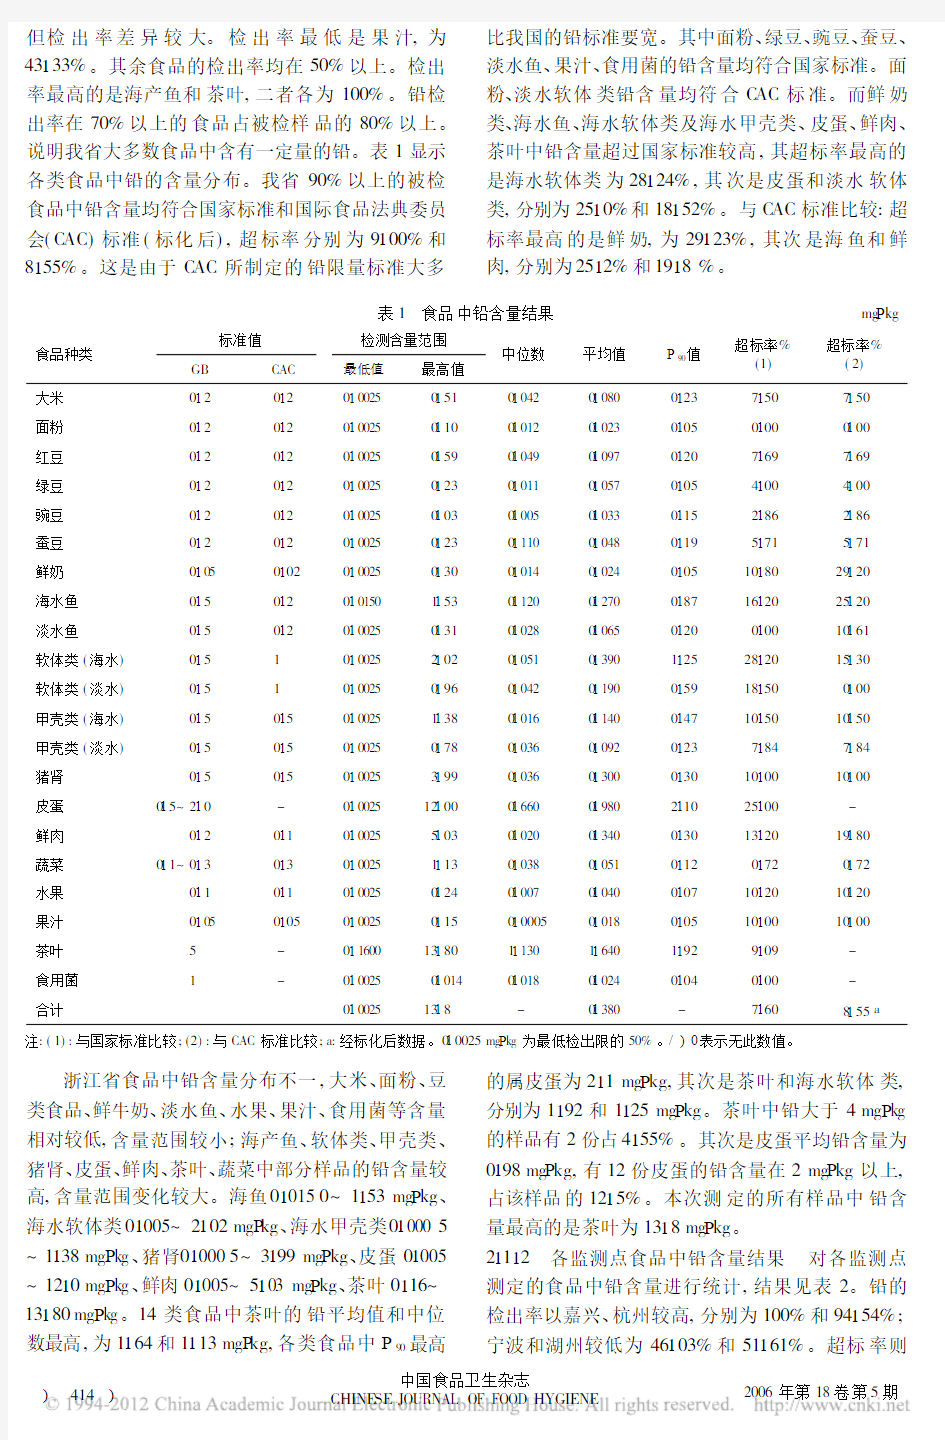 浙江省部分食品中铅镉污染水平研究